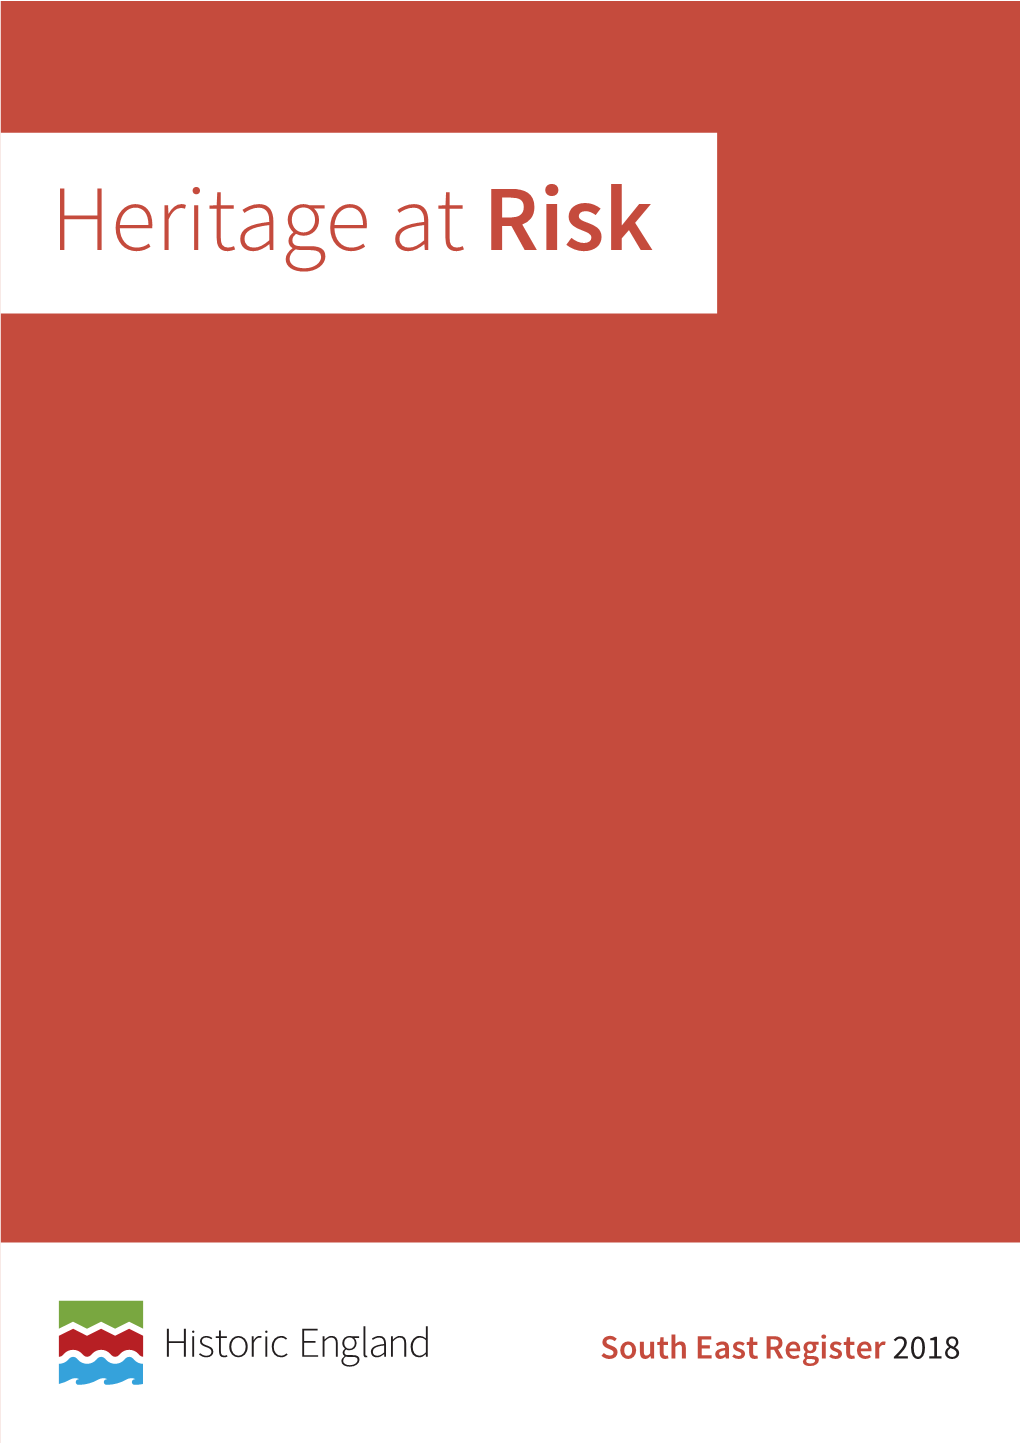 Heritage at Risk Register 2018, South East